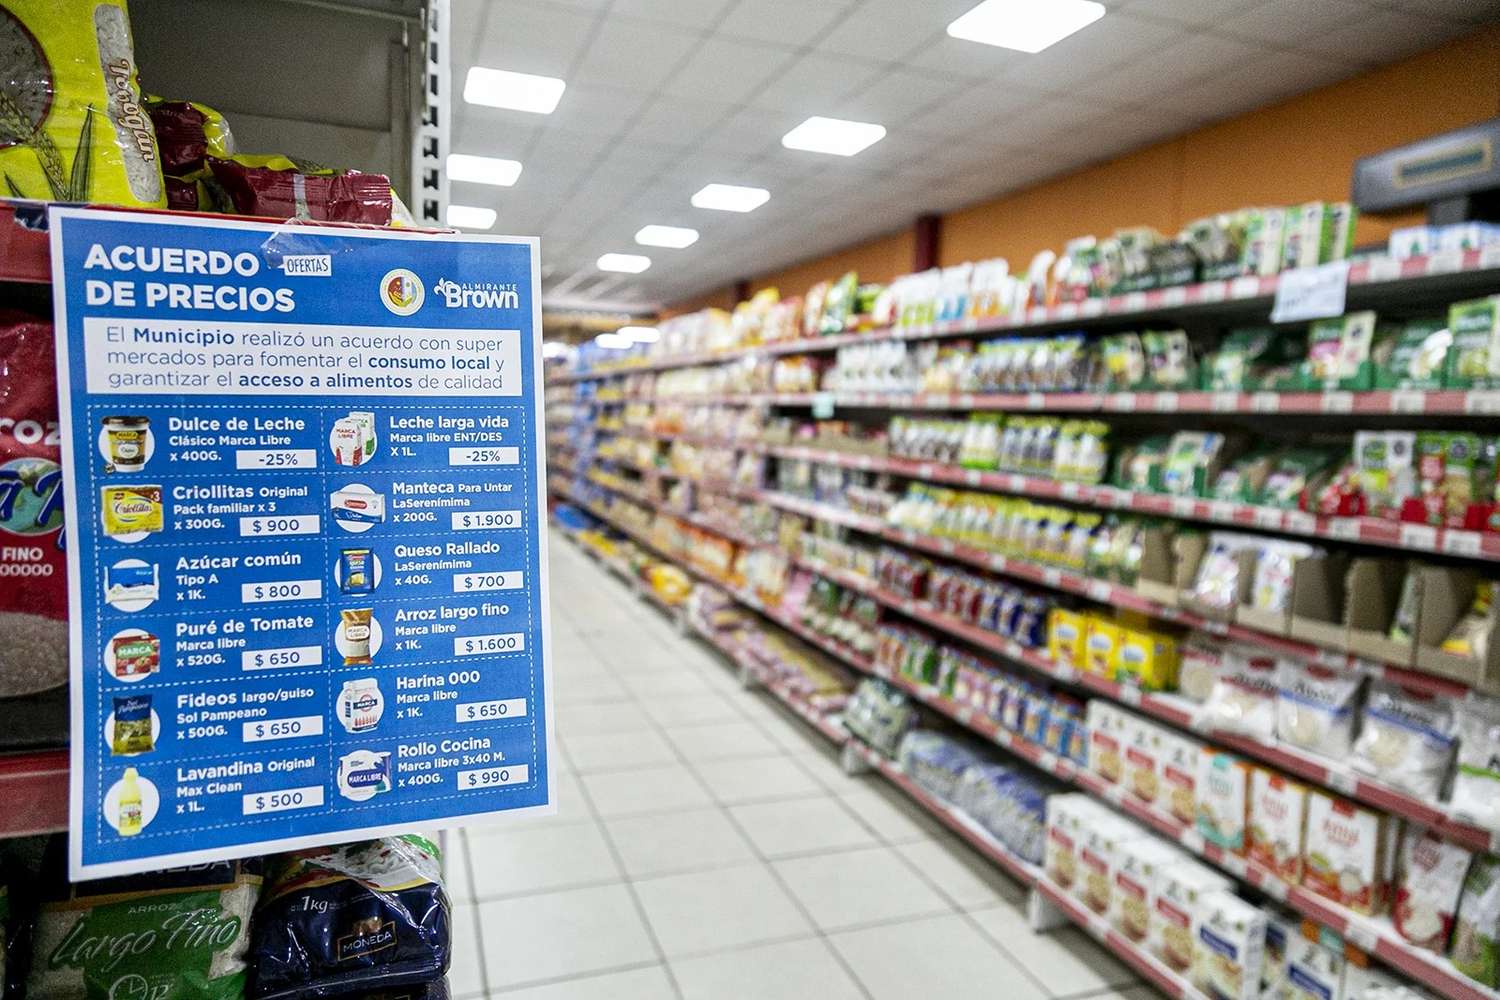 El municipio de Almirante Brown hizo un acuerdo de precios con los supermercados chinos